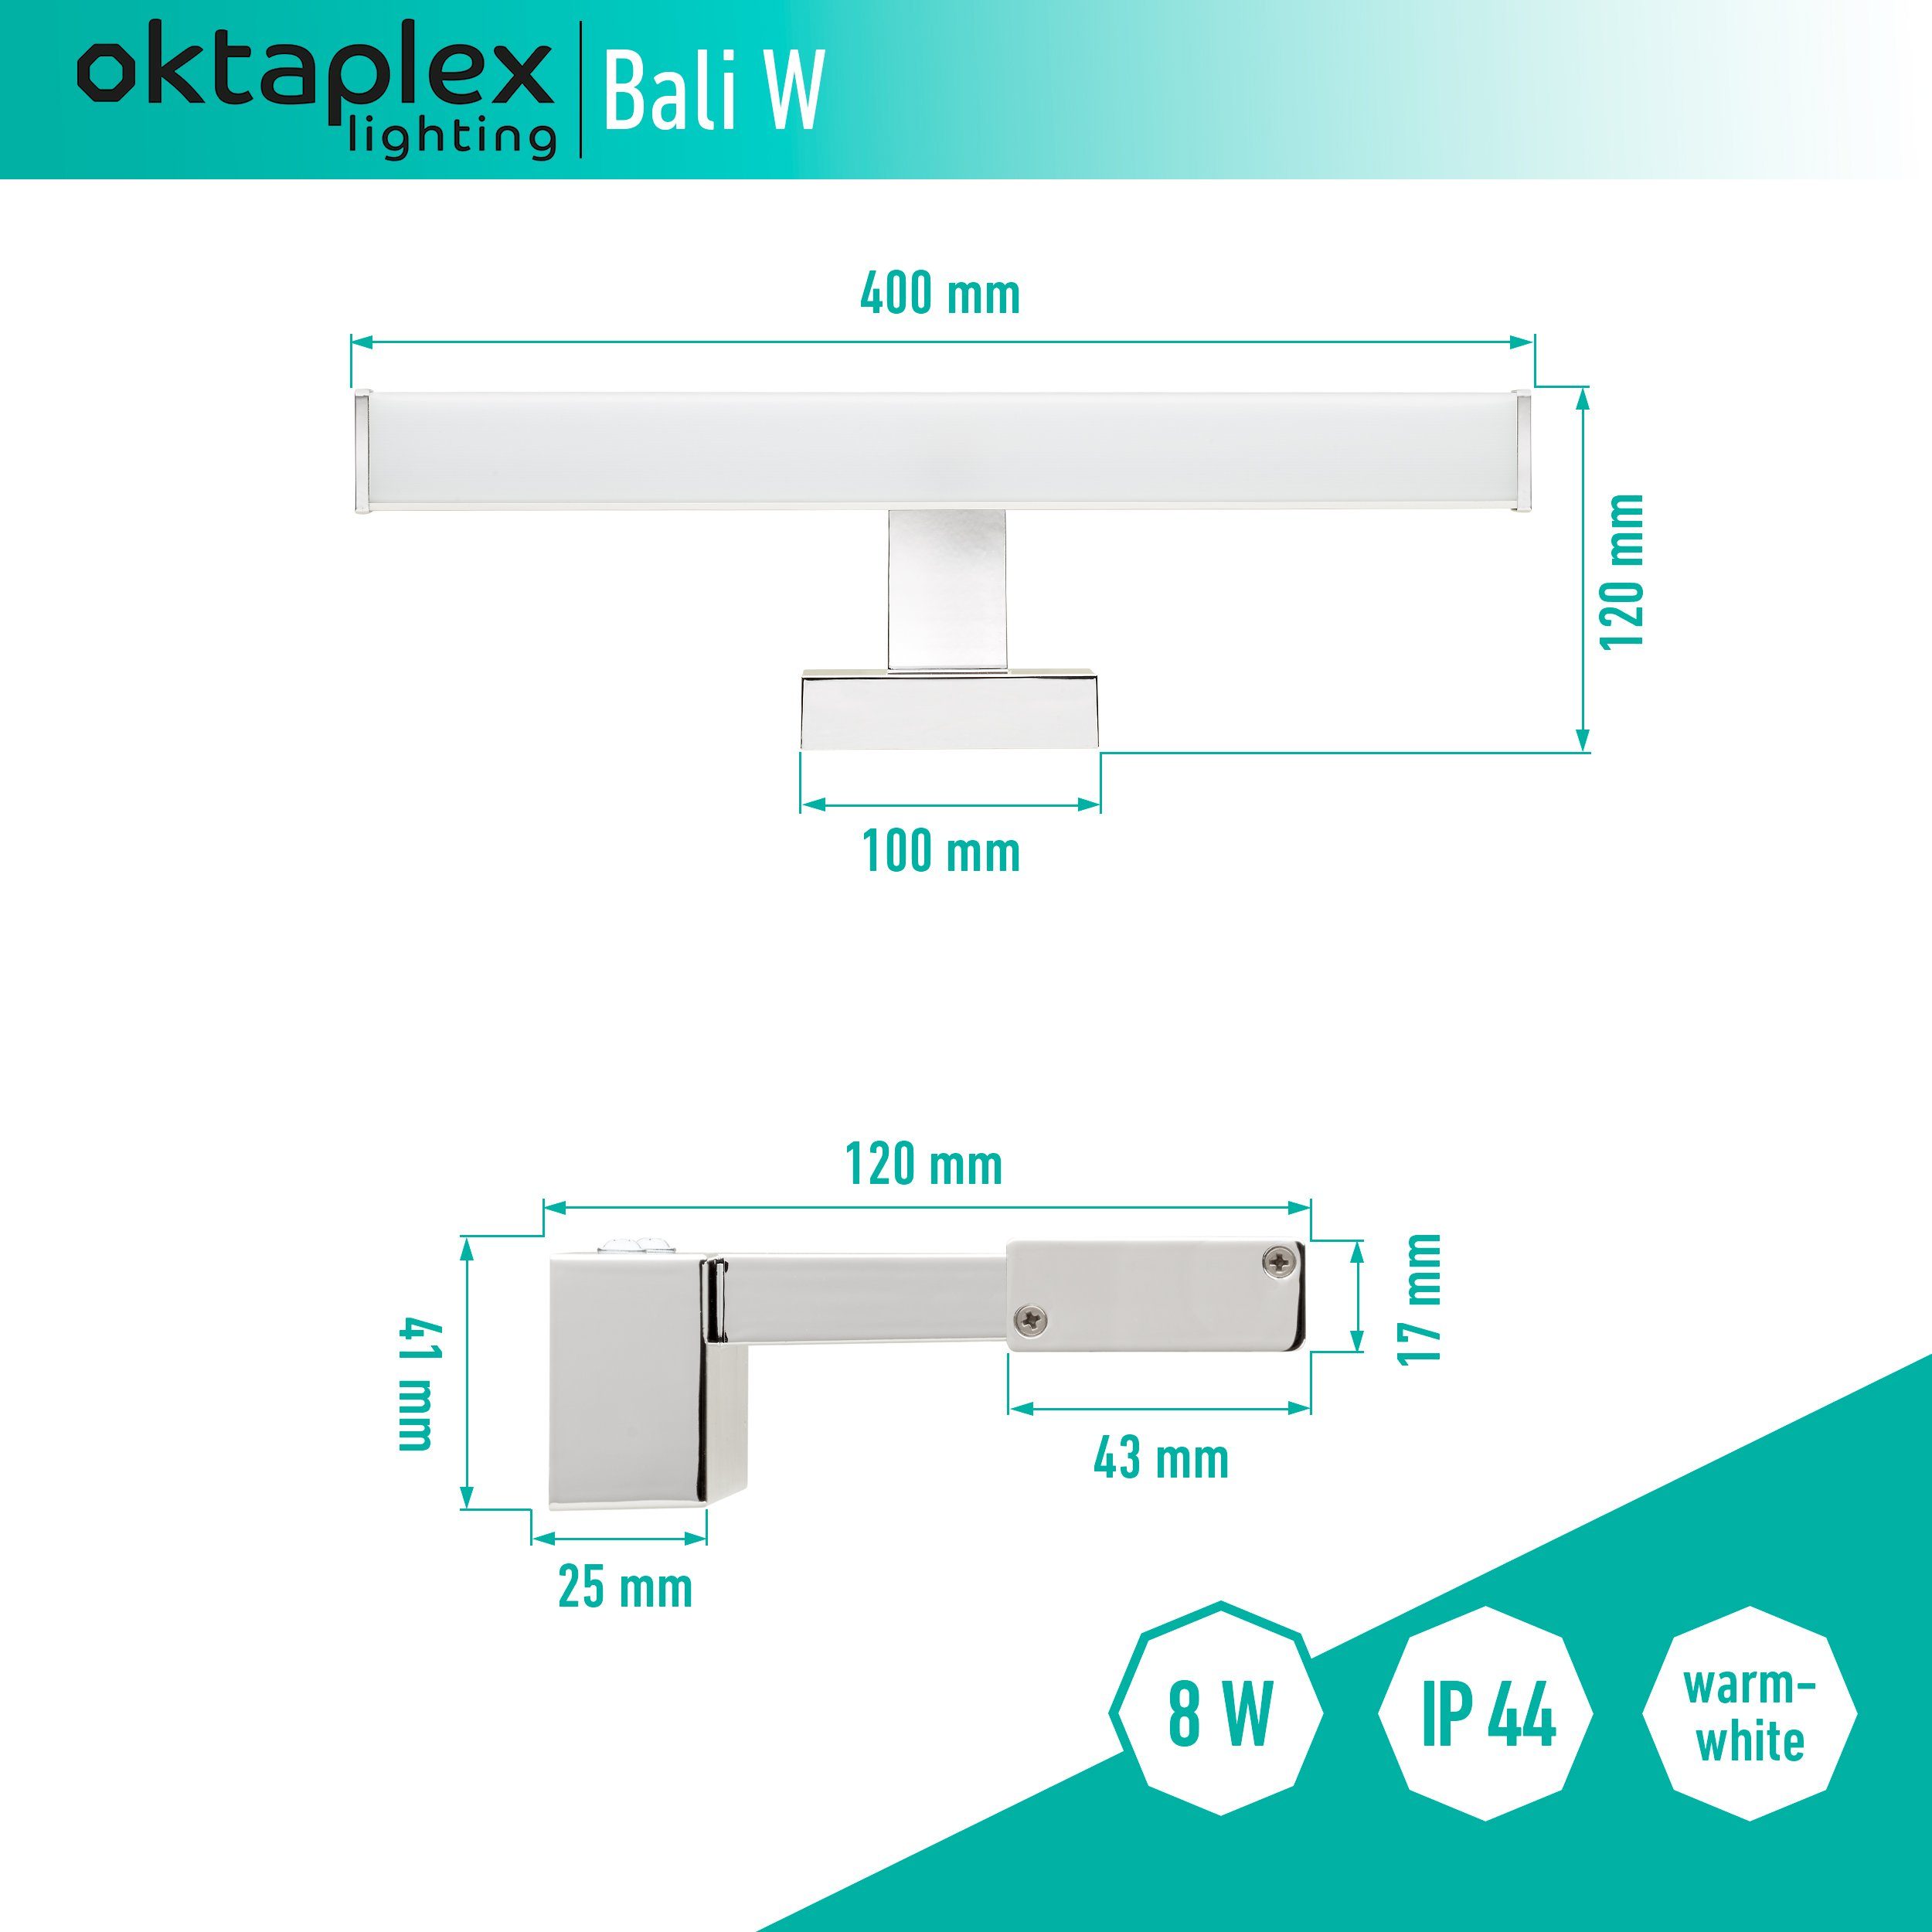 verbaut, Bali fest LED Oktaplex lighting Spiegellicht Wandlampe IP44 Bad Spiegellampe 8W, Spiegelleuchte LED 640lm Silber / 8W LED warmweiß, 40cm, /